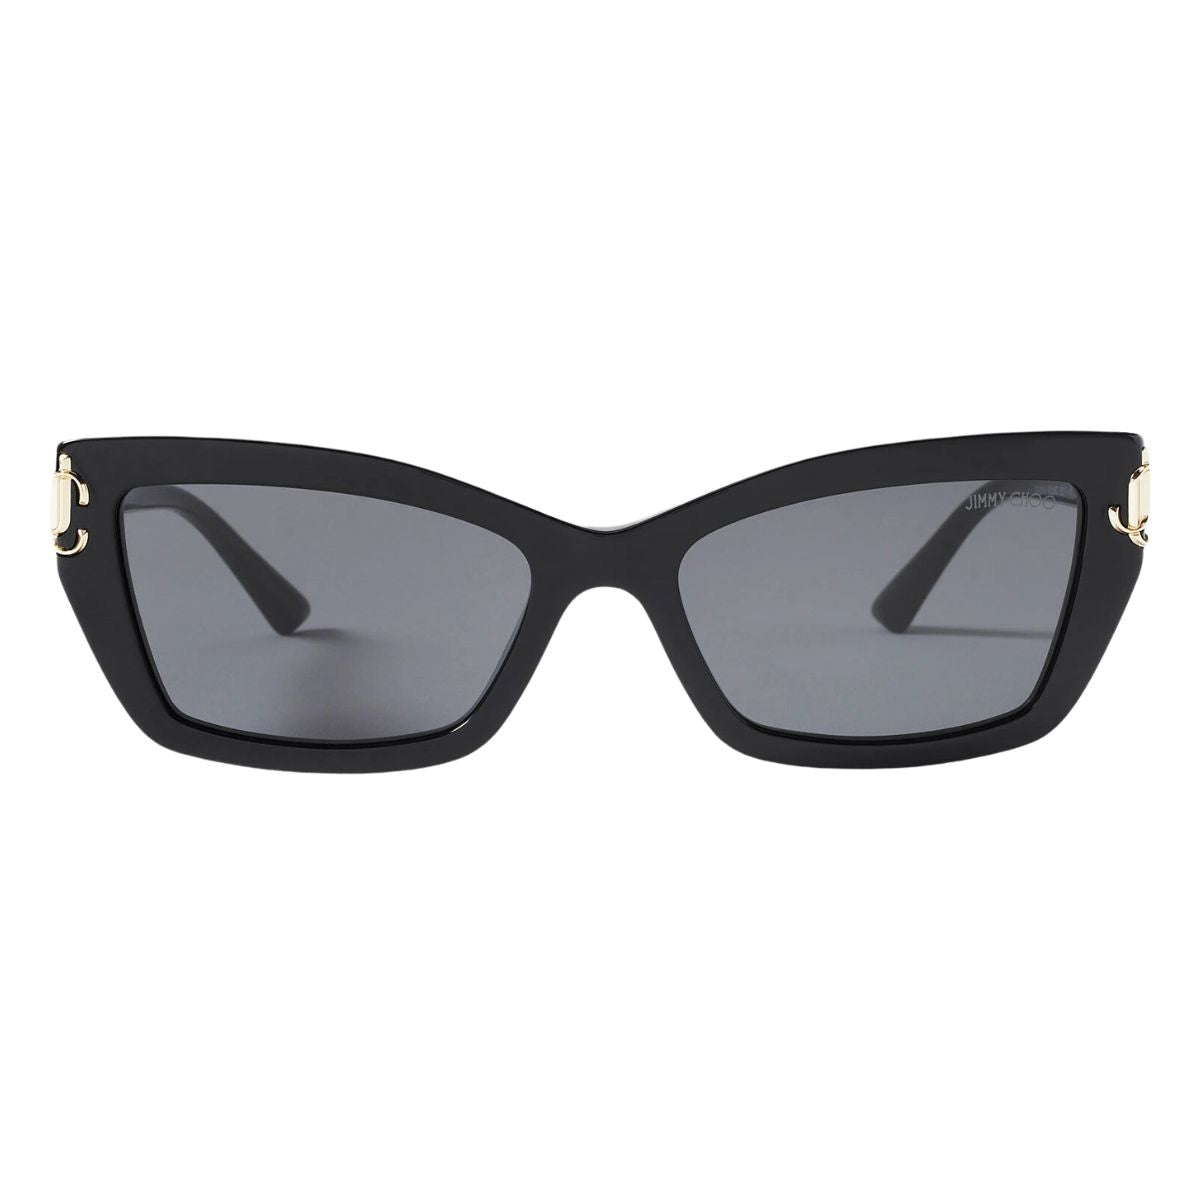 "Shop Trending Jimmy Choo Cat Eye Shape Sunglasses For Women's At Optorium Online Store | Offer Sunglasses For Women's"